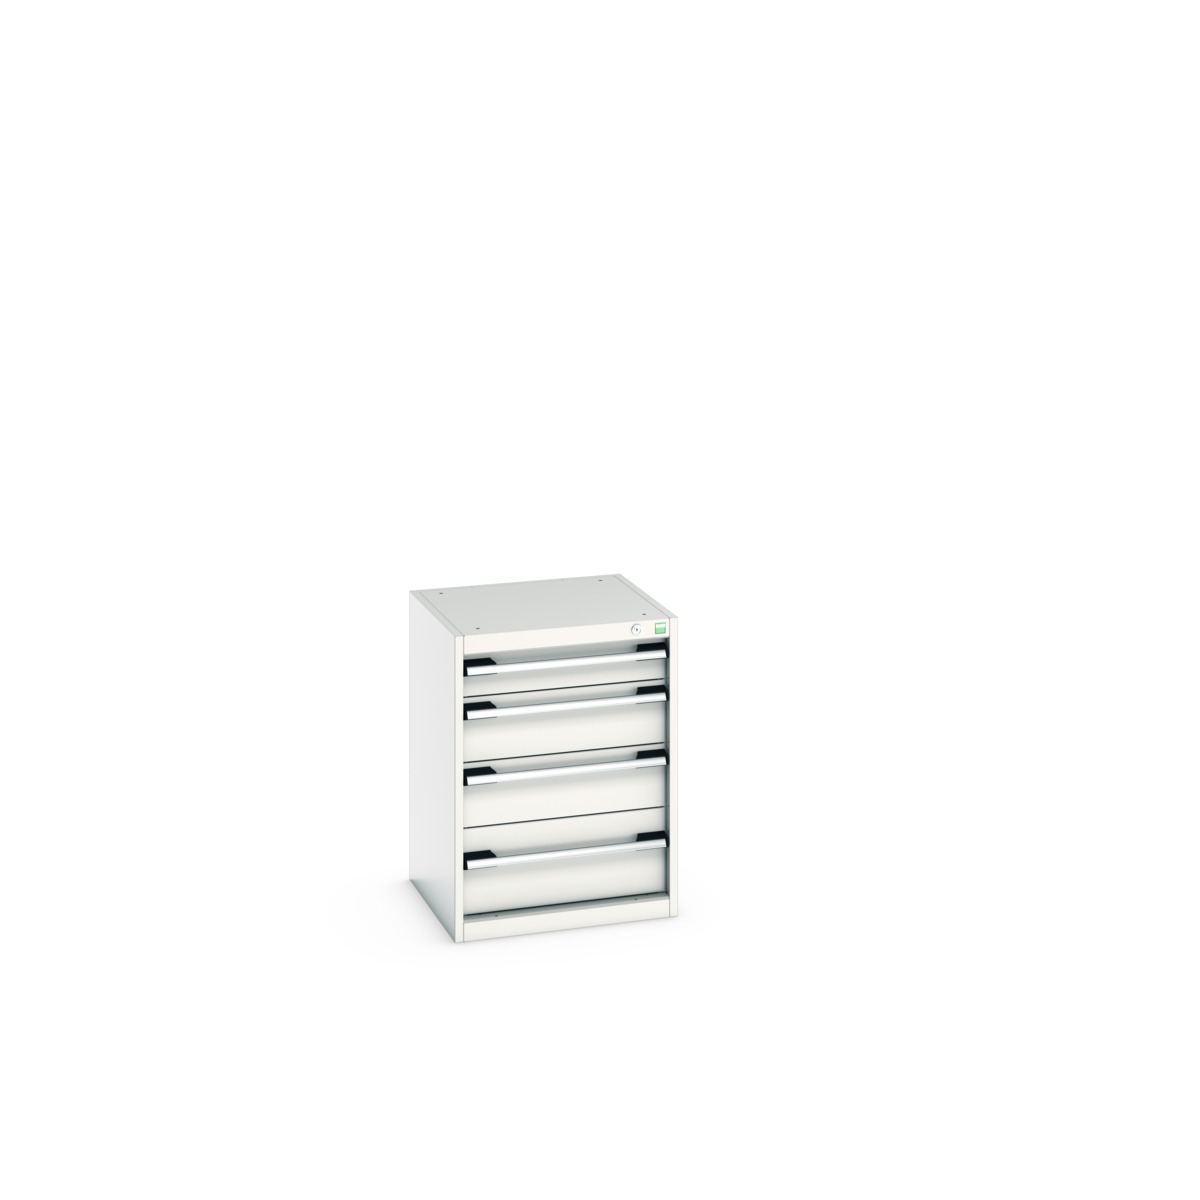 40010021.16V - cubio drawer cabinet